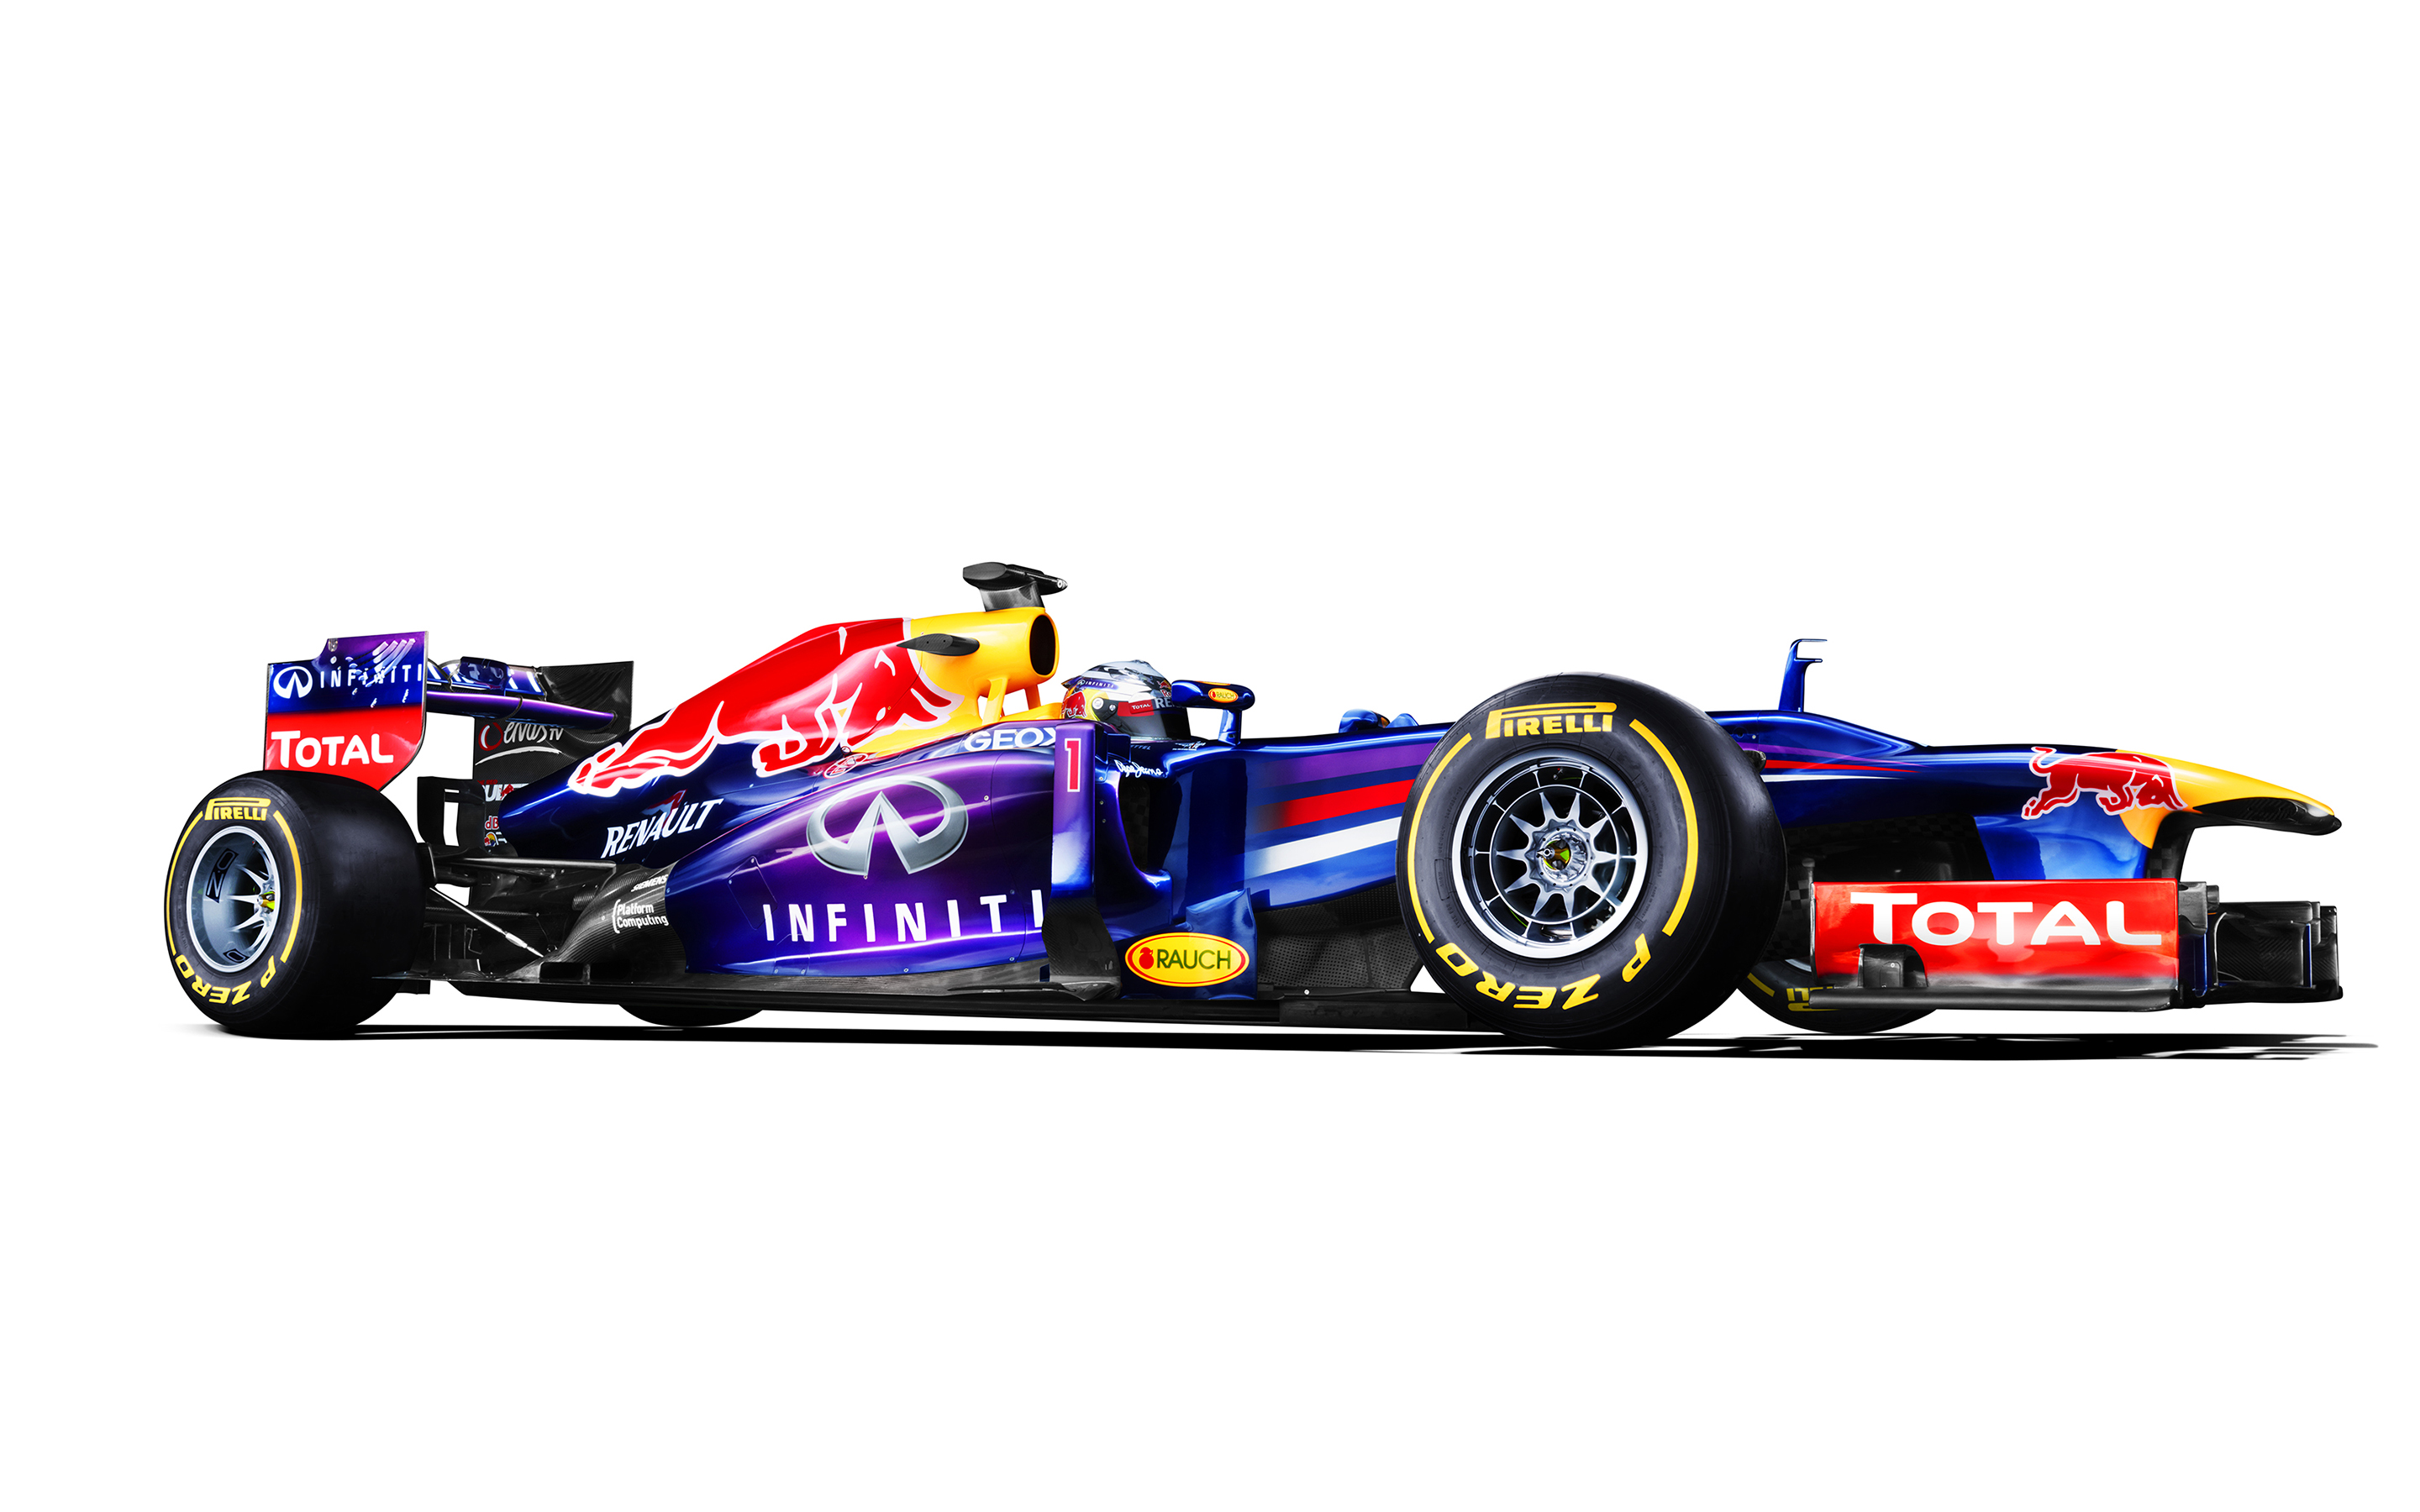 Race Car Formula One F1 White Red Bull Wallpaper